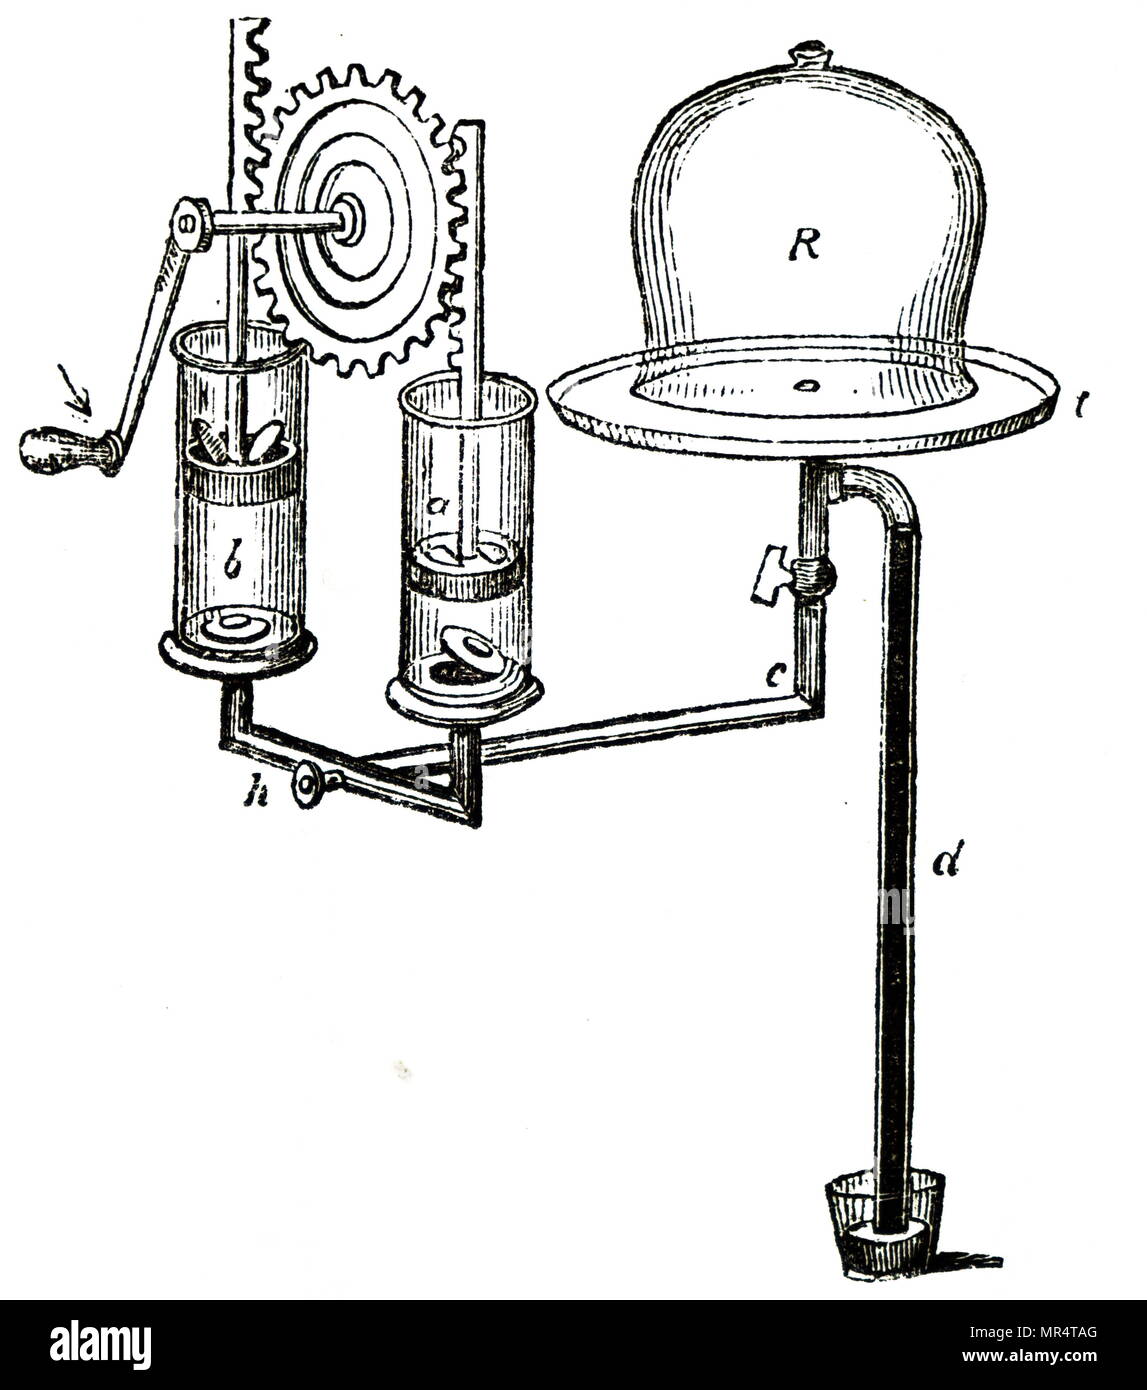 Diagramm einer Zahnstangenlenkung Mechanismus für den Betrieb der Pumpe verwendet. Vom 19. Jahrhundert Stockfoto